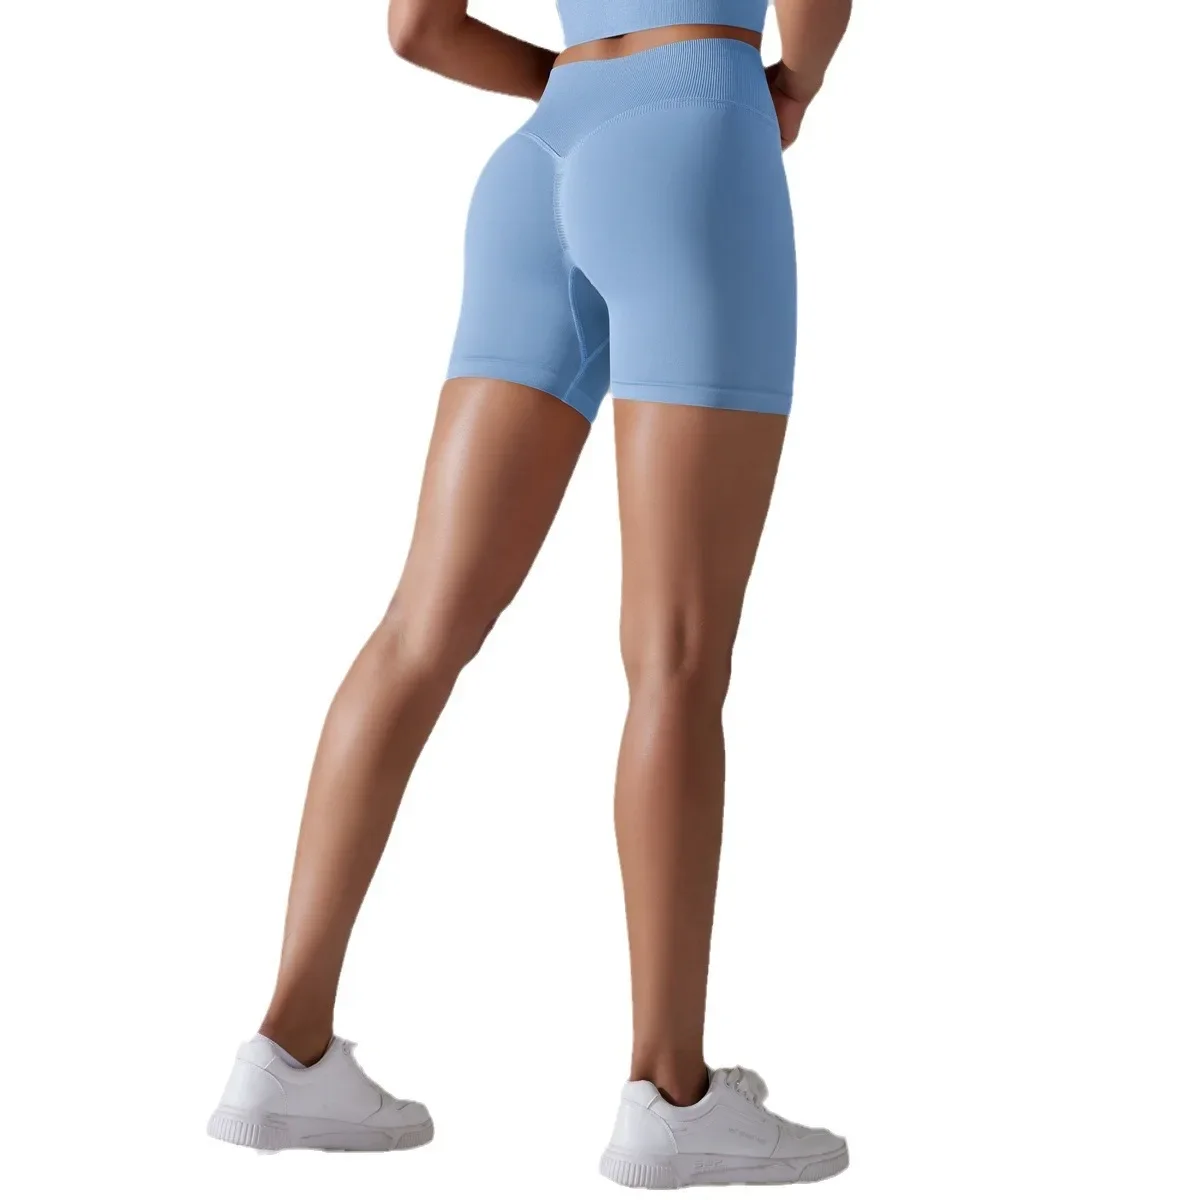 Celana pendek Yoga berkerut, celana pendek Fitness wanita untuk olahraga Lari, pakaian Gym pendek, pakaian olahraga ketat, Legging pendek